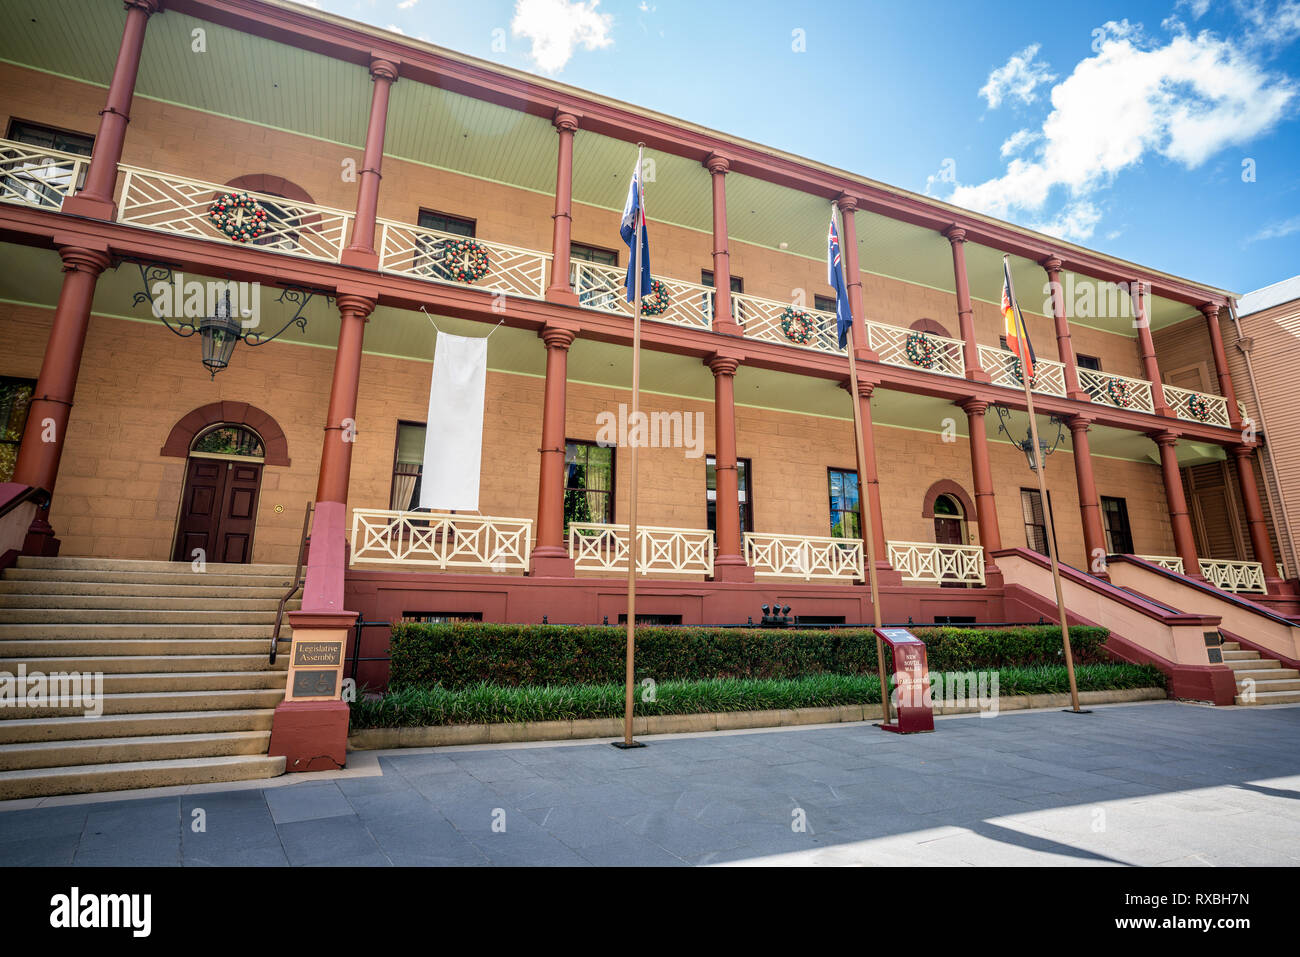 La Maison du parlement de la Nouvelle Galles du Sud en vue d'extérieur de bâtiment Sydney NSW Australie Banque D'Images